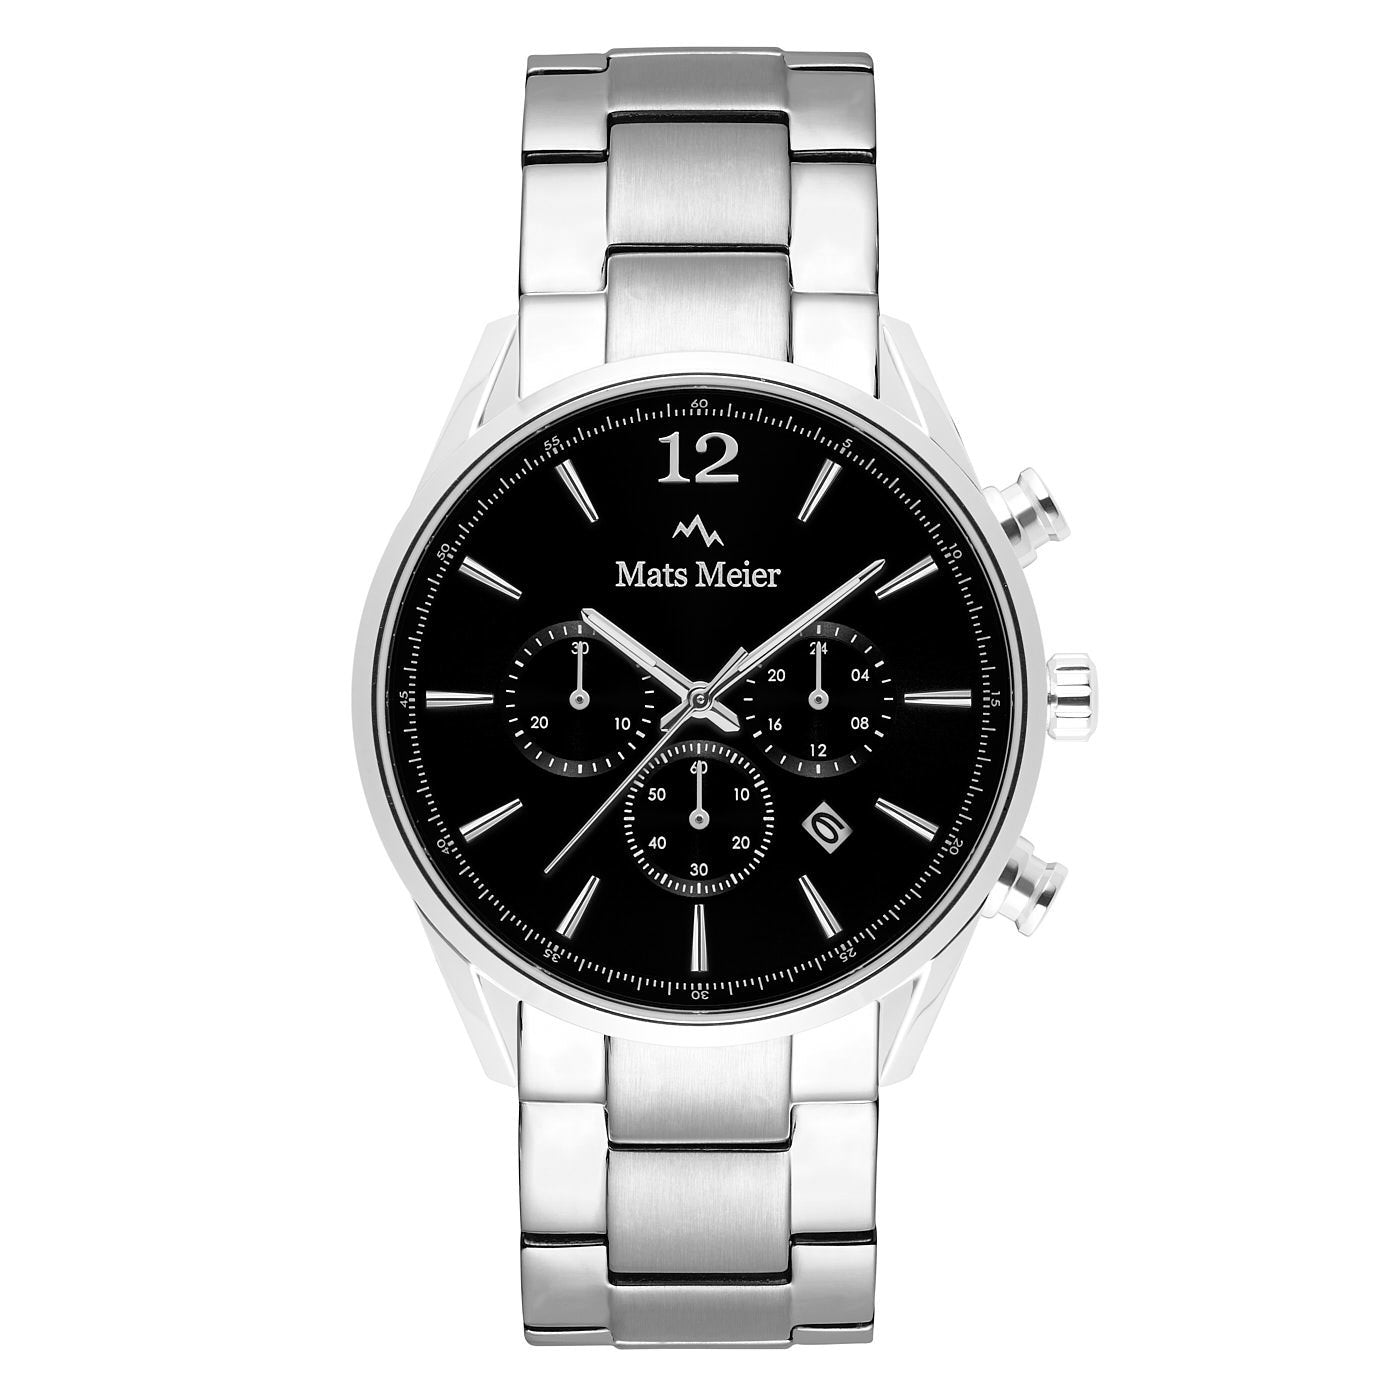 Grand Cornier chronograph mens watch black / silver colored